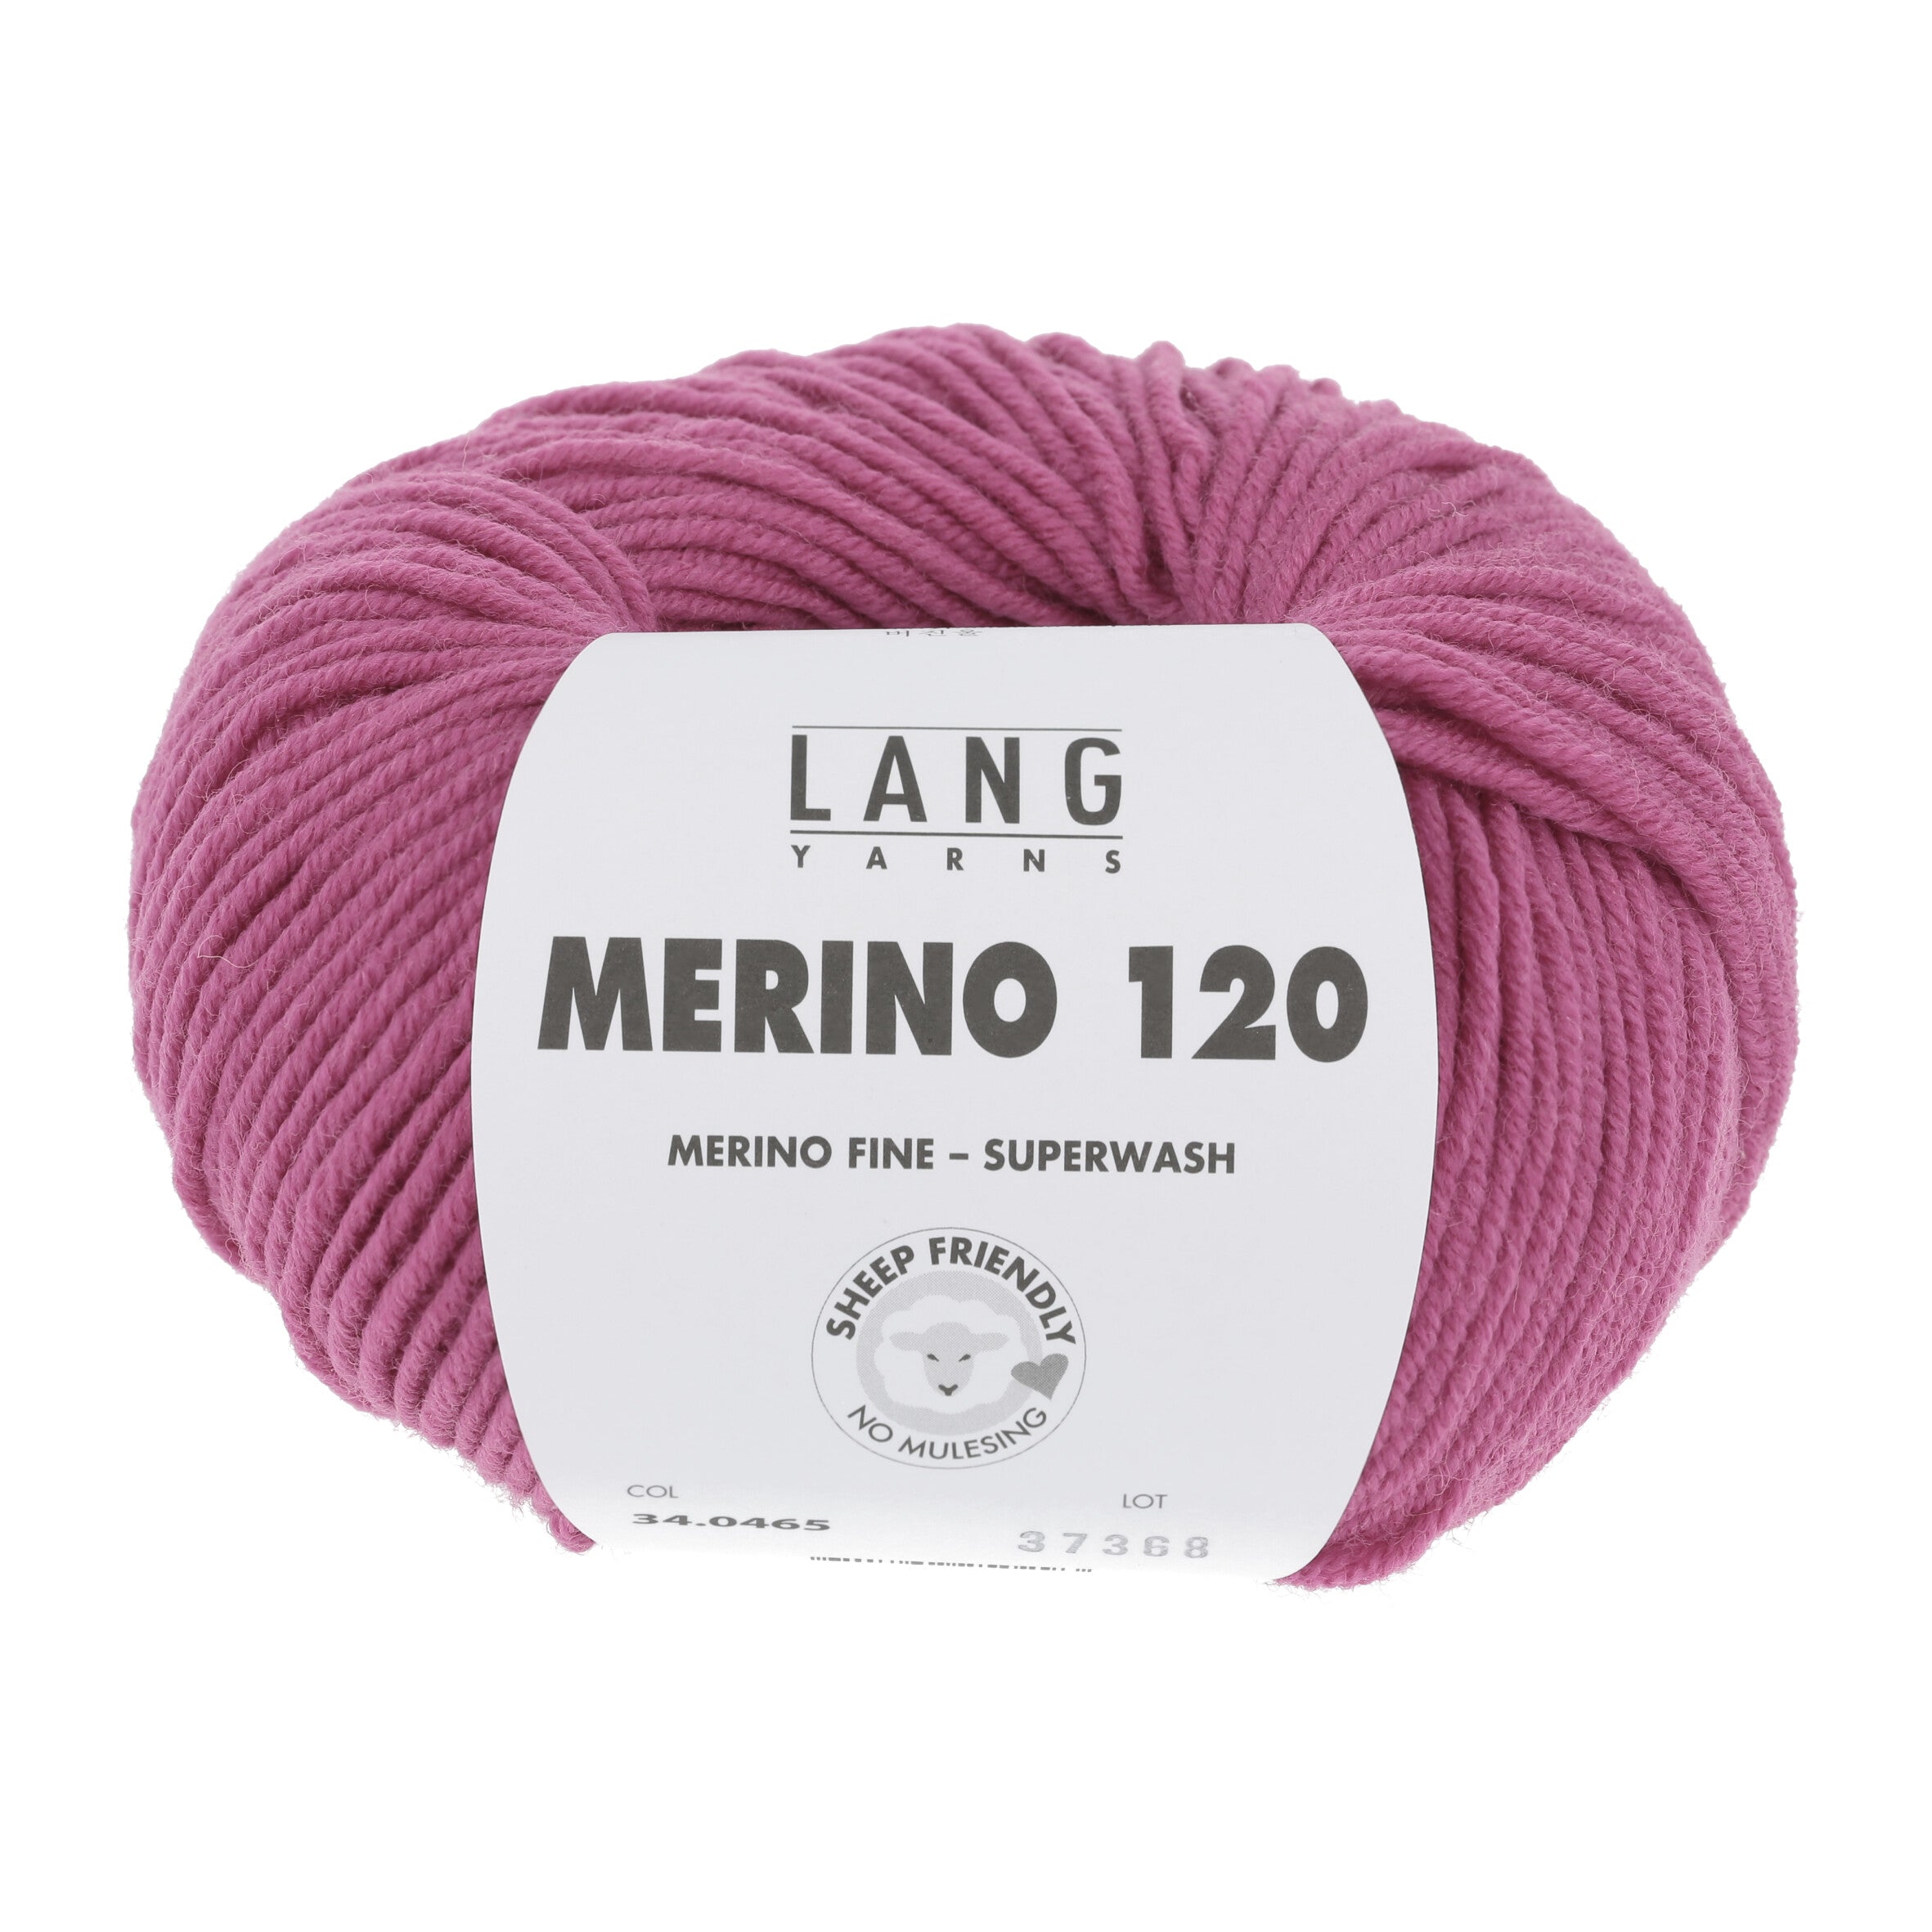 MERINO 120 von LANG YARNS jetzt online kaufen bei OONIQUE